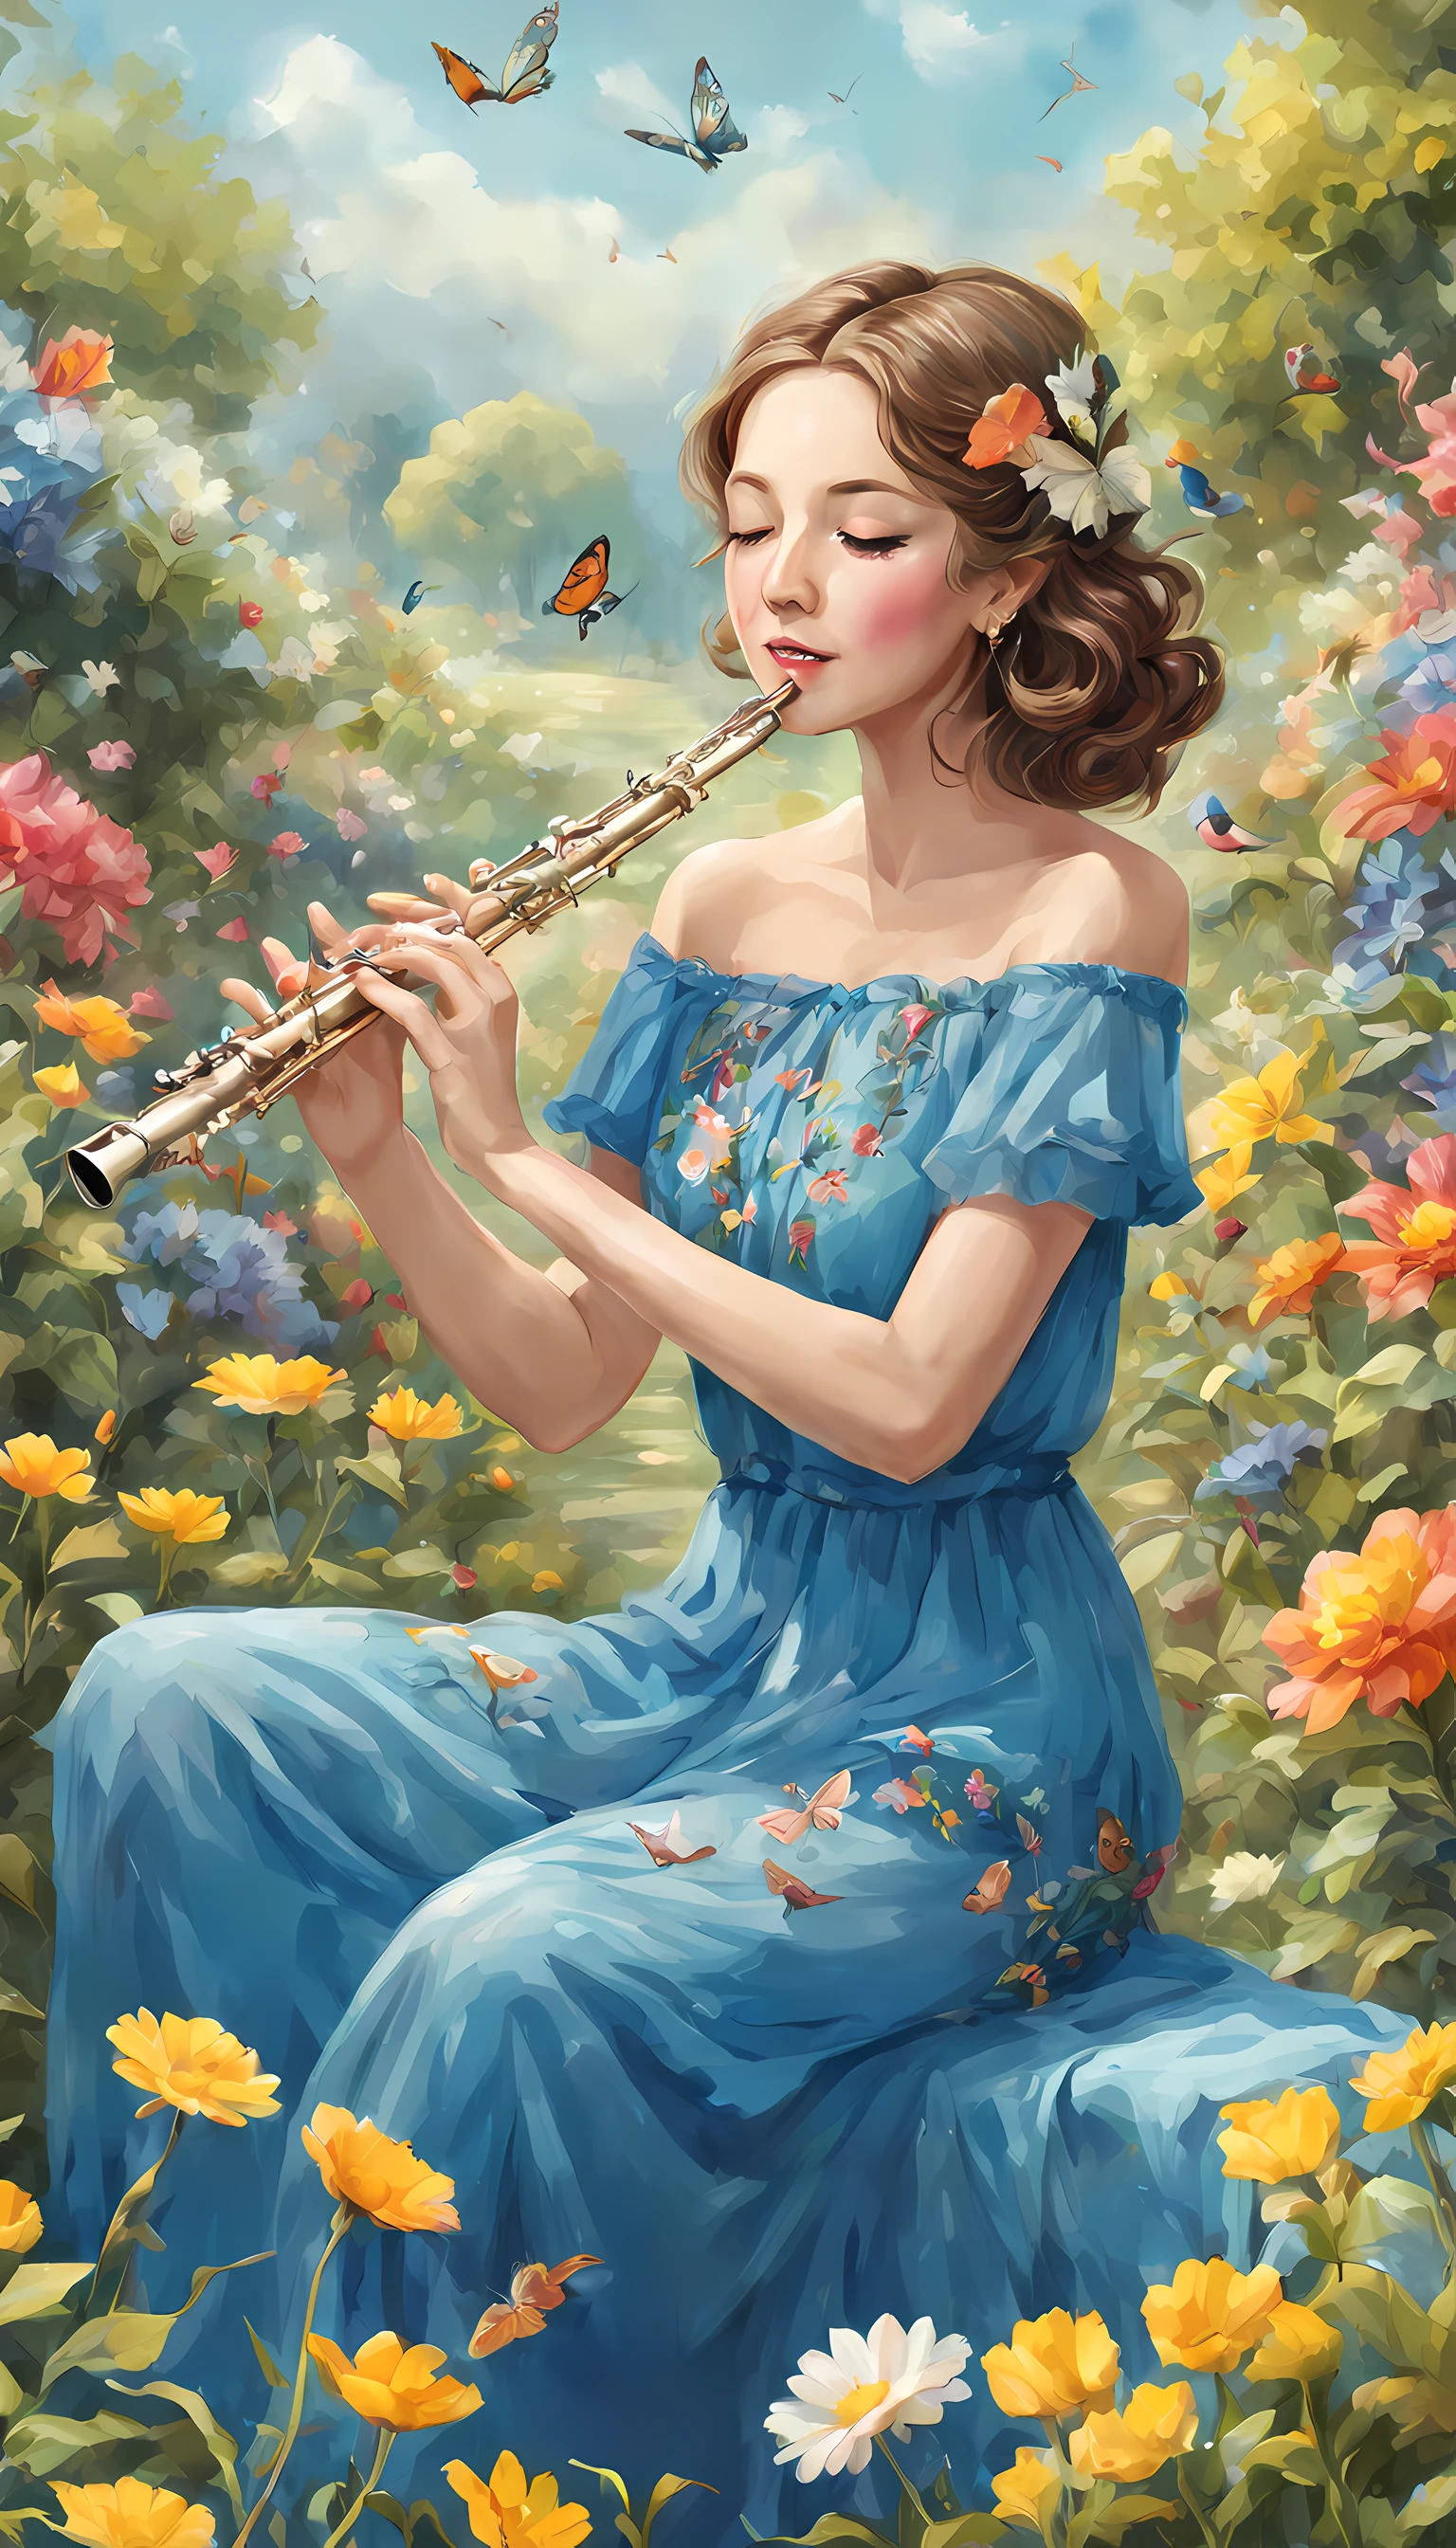 一部神奇的视觉杰作，讲述一位可爱的女人在花园里吹笛子, 蓝色连衣裙,丰富多彩的,优雅的, 蝴蝶, 幸福,喜悦, 风,快乐的颜色, 双手放在笛子上,贝雷帽,完美风景, 华丽的,花朵, 鸟类, 完美脸蛋,优雅的,风, 错综复杂, (完美脸蛋)